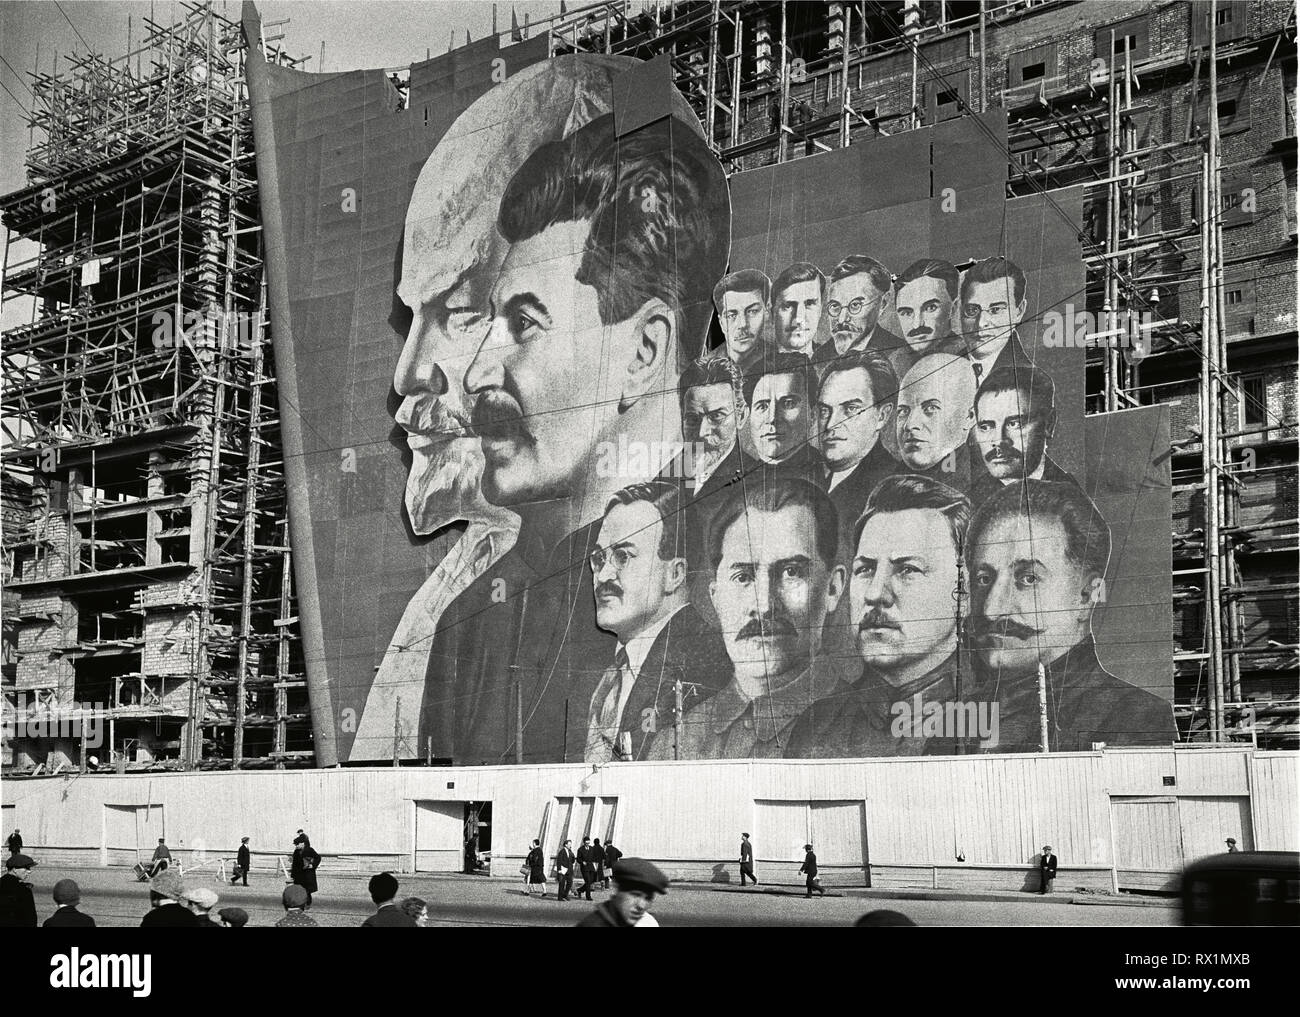 Une grande affiche avec des portraits des dirigeants politiques russes Vladimir Lénine, Joseph Staline et d'autres pour la parade du jour de mai pend sur l'échafaudage d'un bâtiment en construction, Moscou, Russie, 1934.(Photo de Burton Holmes) Banque D'Images